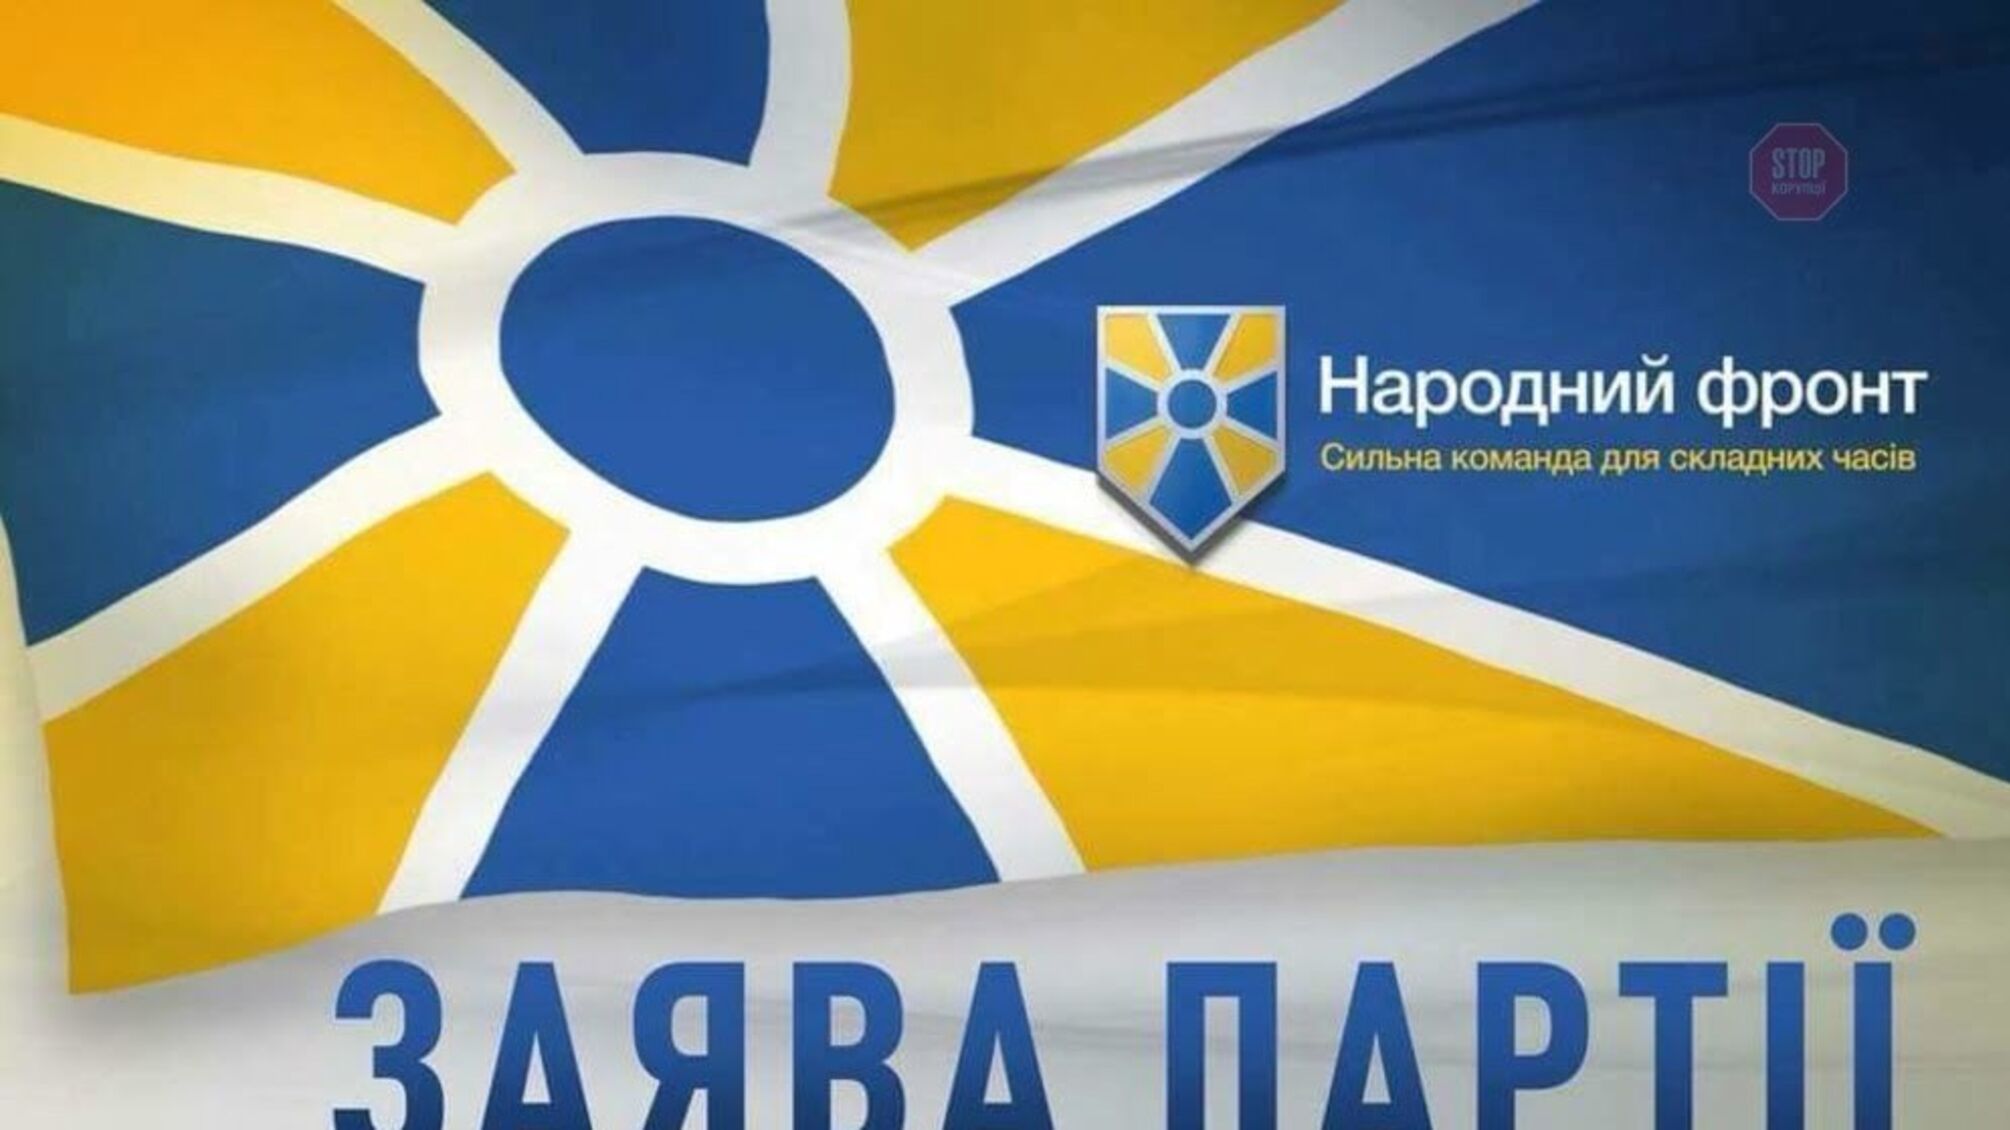 «Сьогодні незаконно розпускають парламент - завтра здадуть частину території України» - НФ закликає депутатів захистити країну